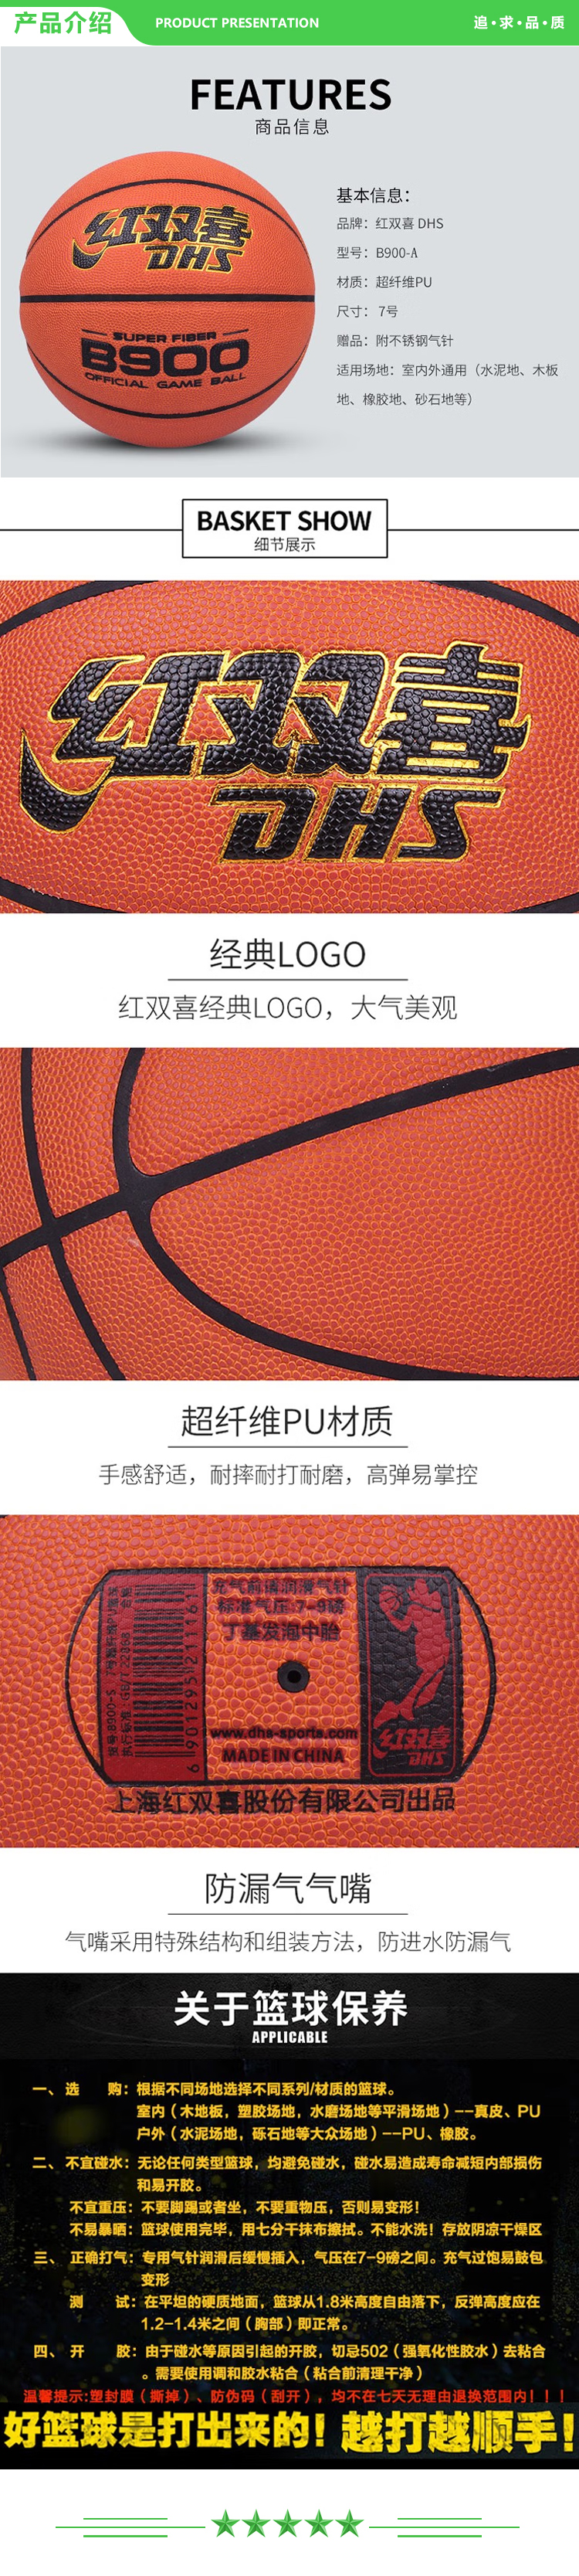 红双喜 DHS B900-A 篮球 标准7号球 超纤维PU球 训练比赛 标准比赛篮球 PU材质  .jpg